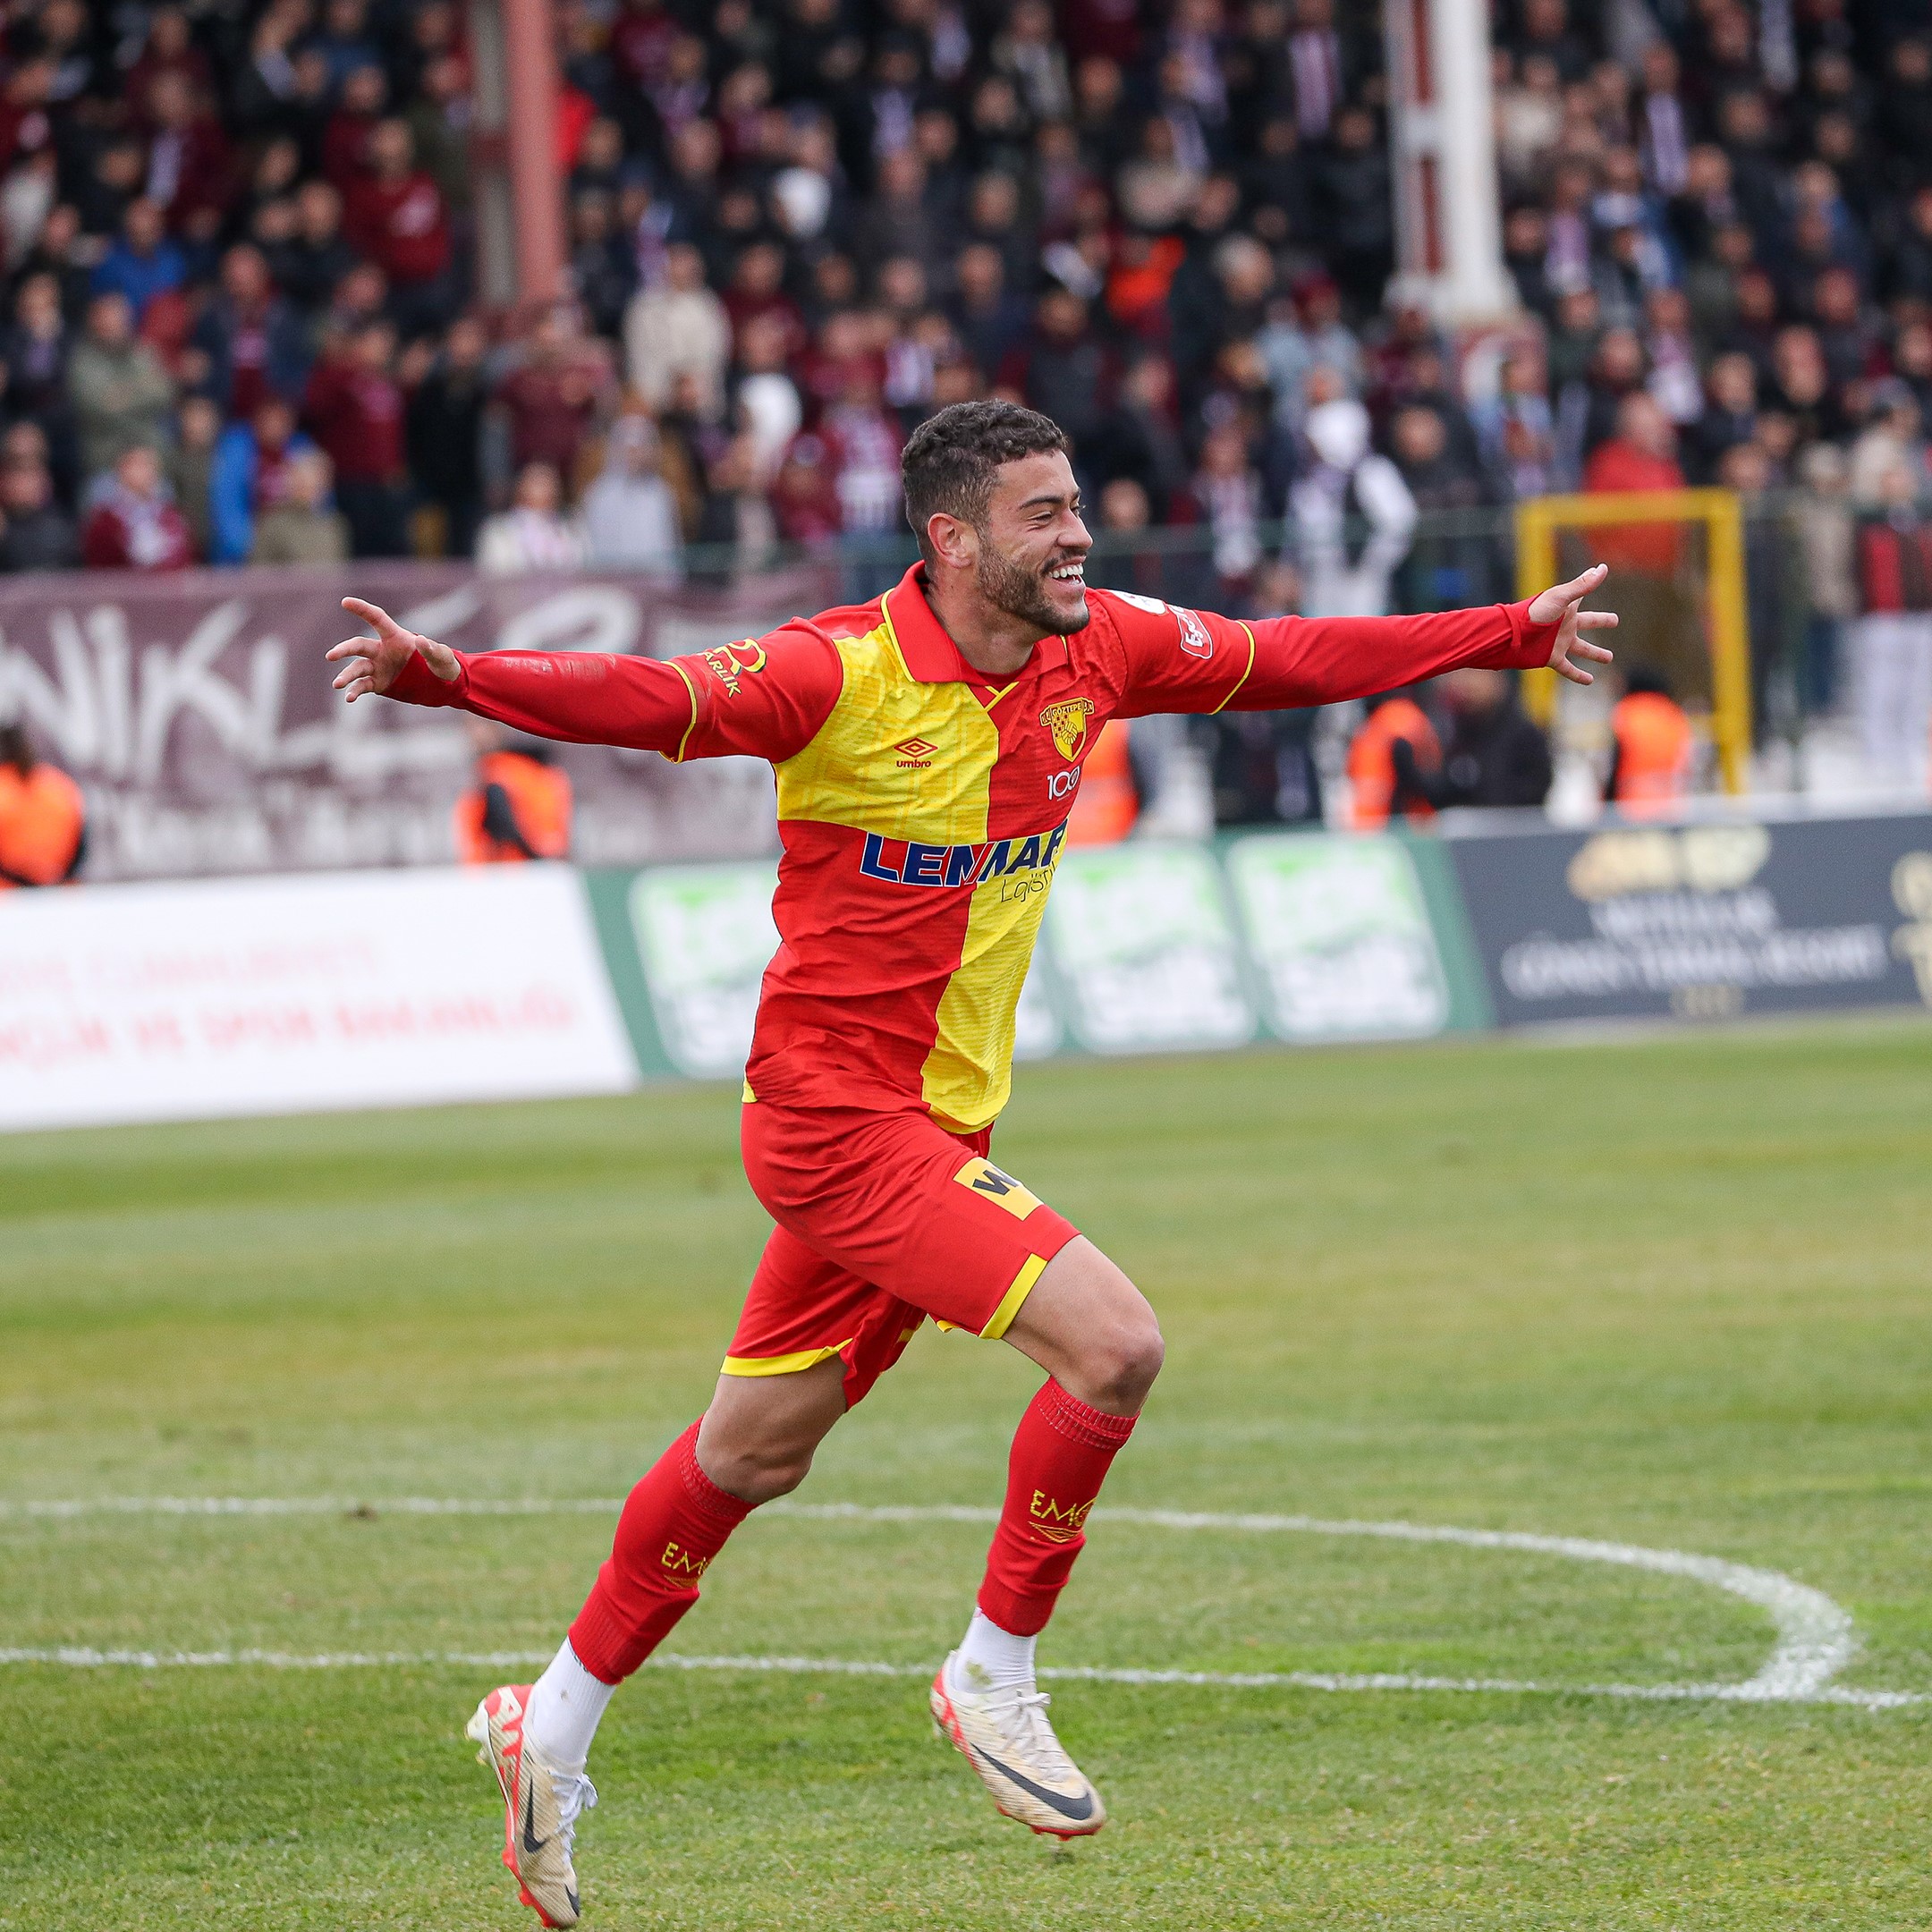 Göztepe’nin kadrosuna kattığı forvet oyuncusu Romulo Cardoso, ilk maçında Bandırmaspor’a karşı 1 gol, 1 asistle oynayarak sarı-kırmızılı camiayı mutlu etti. GÖZTEPE'DE GOLCÜ SEVİNCİ YAŞANIYOR